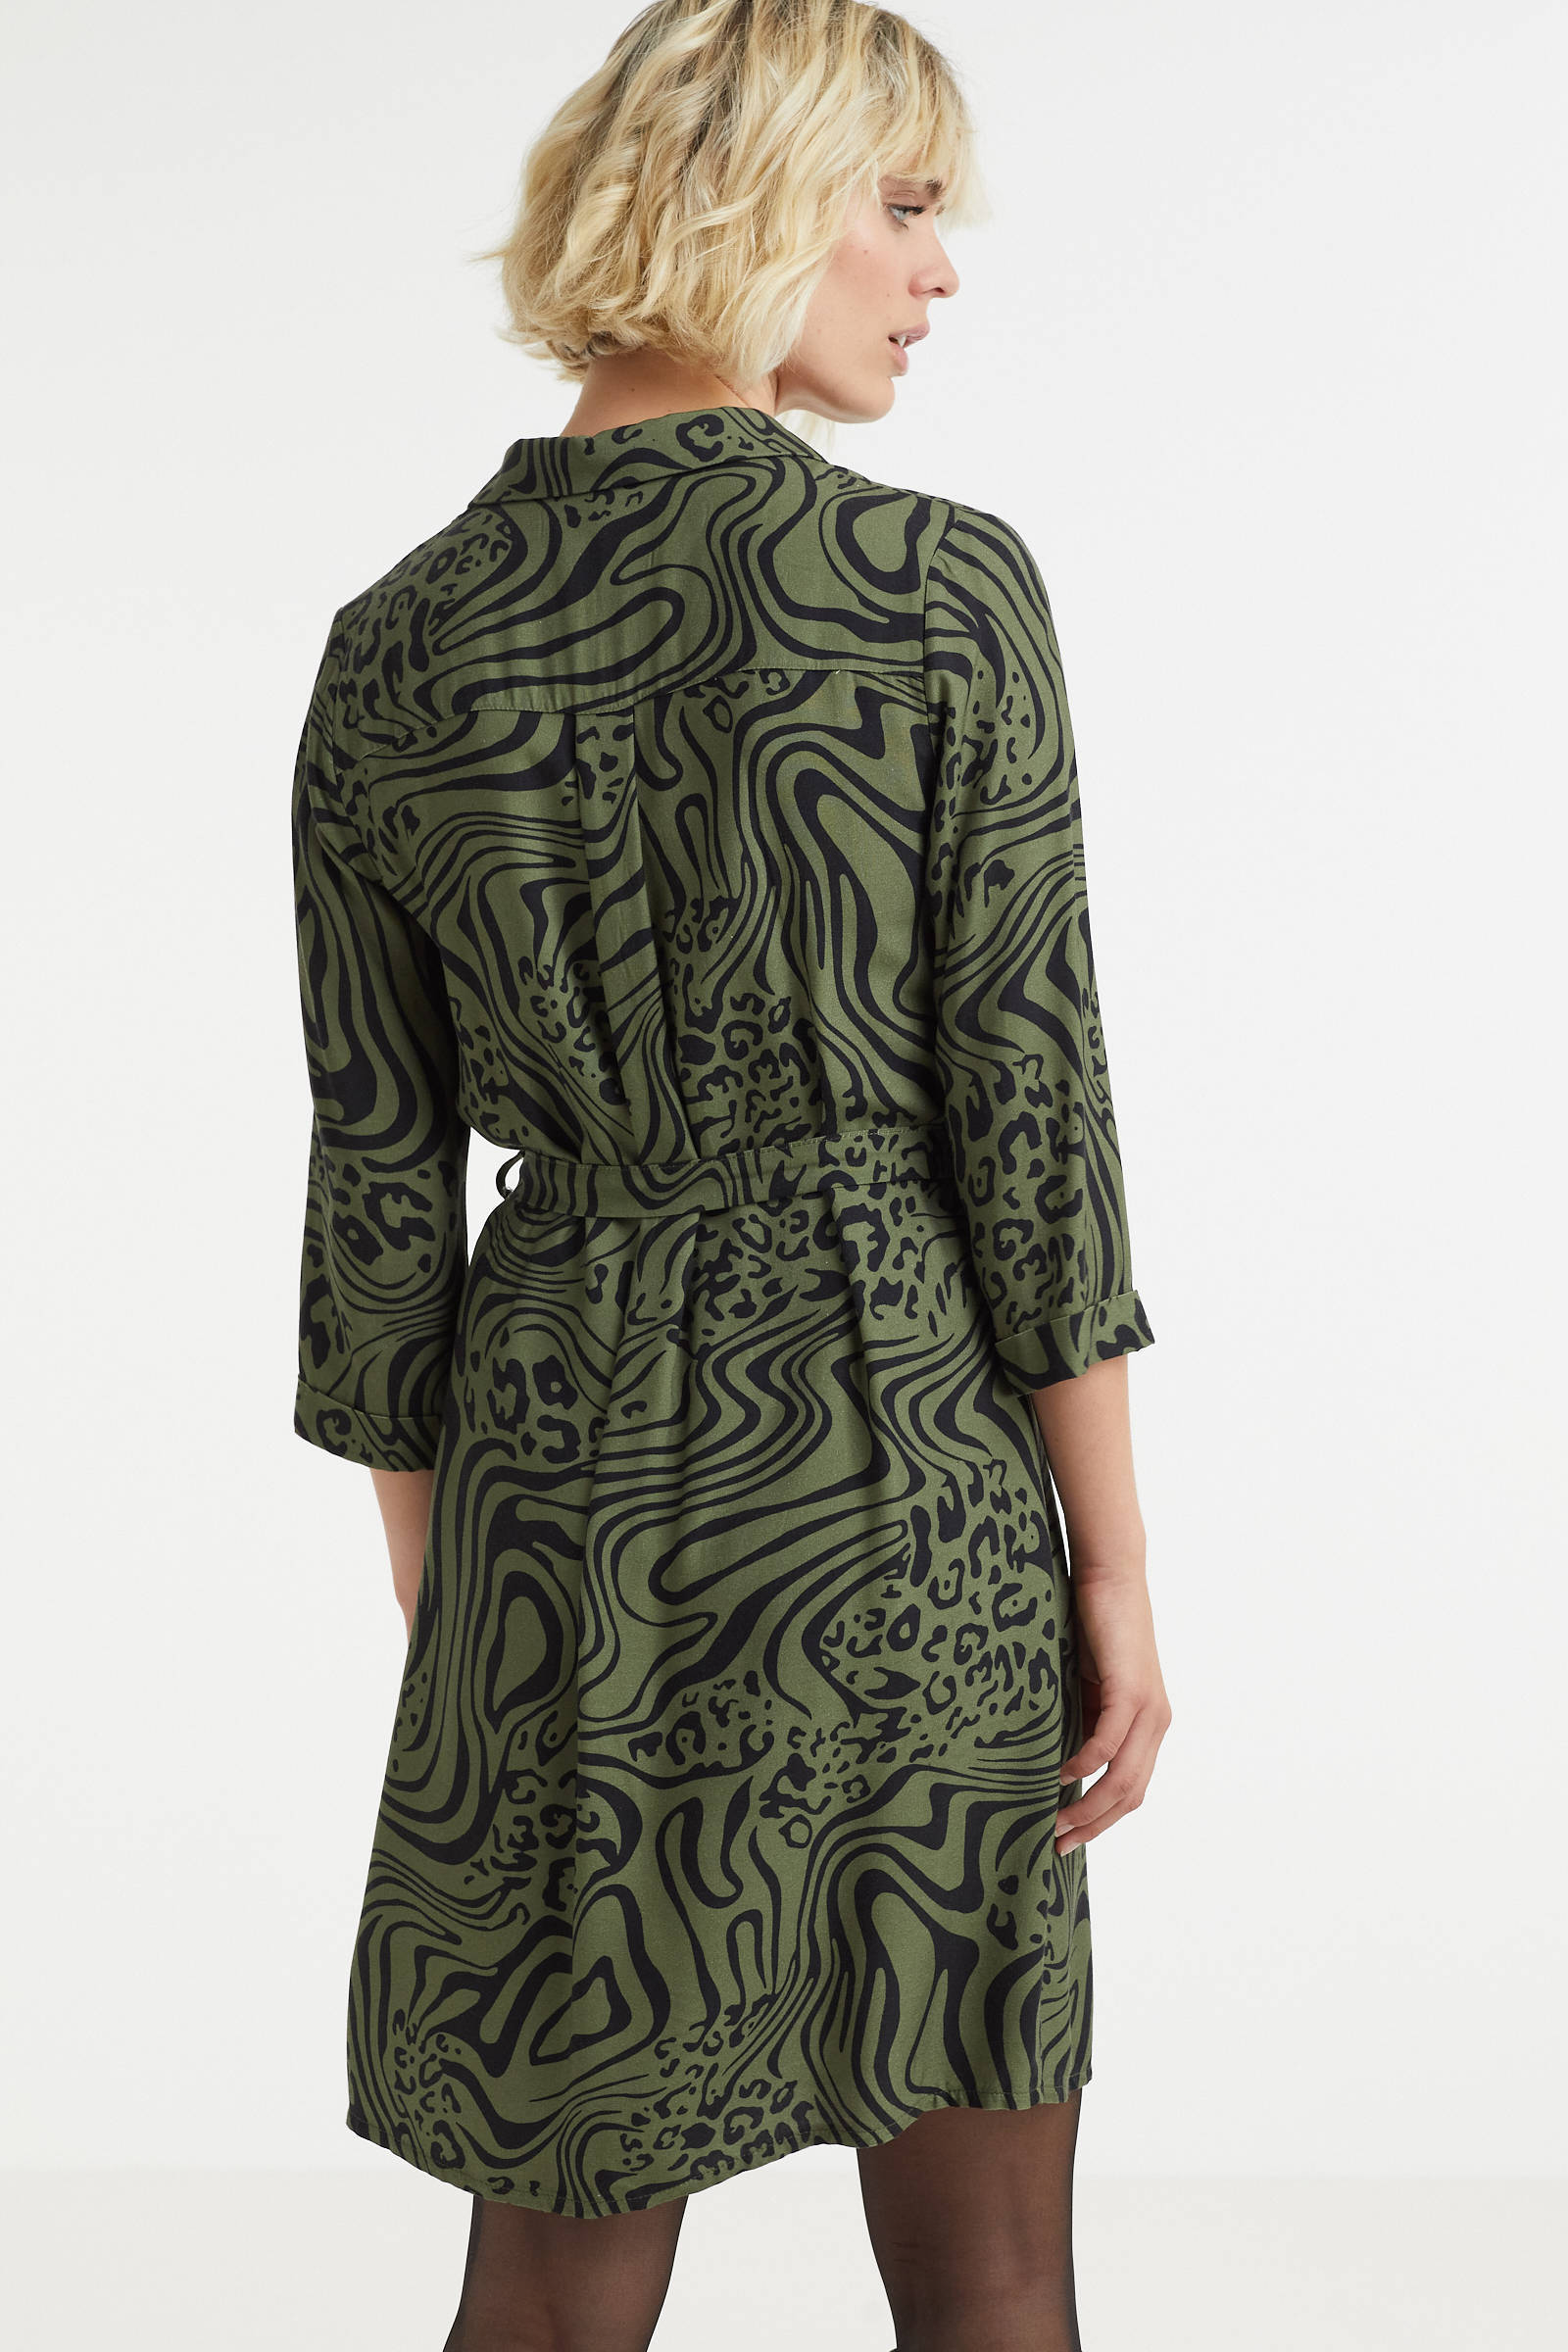 Smashed Lemon jurk met all over print groen/zwart online kopen